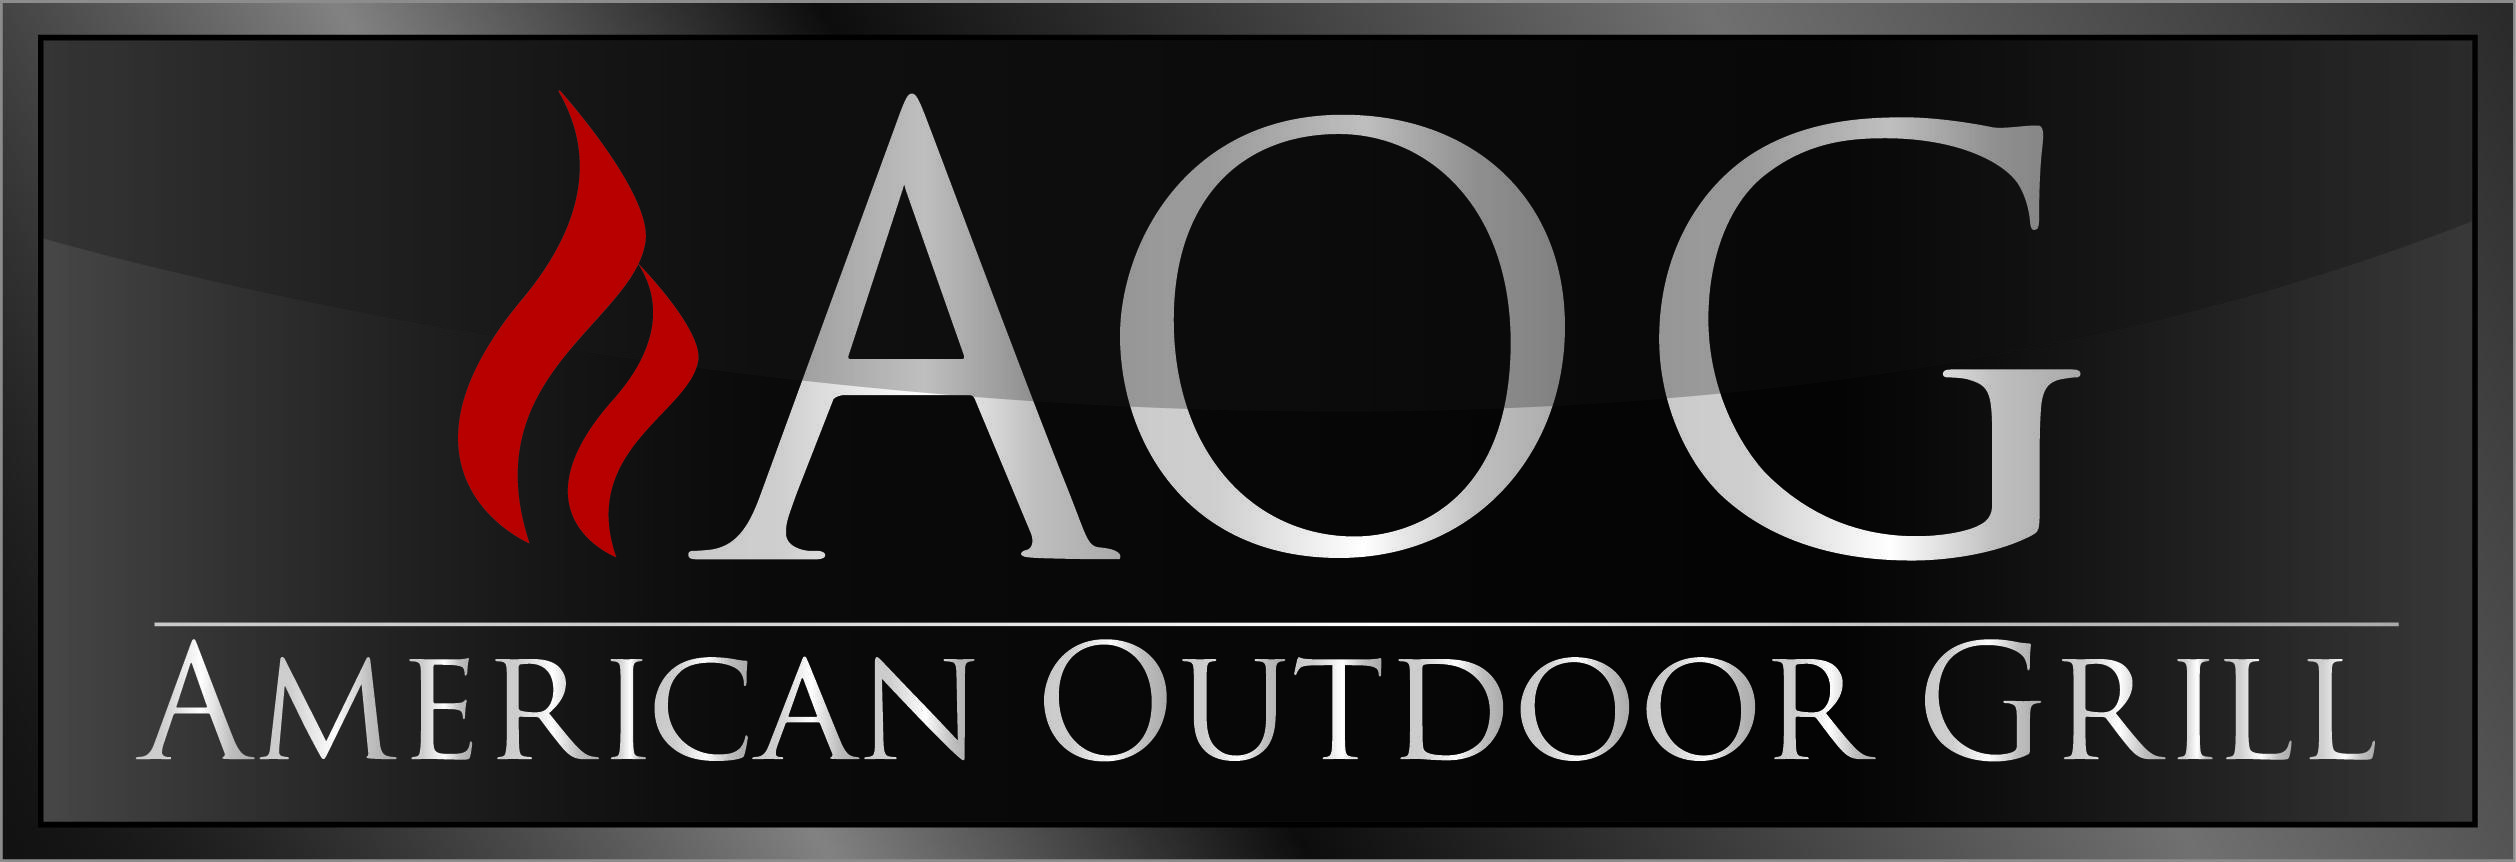 American Outdoor Company Logo - American Outdoor Grill – Homecrafters